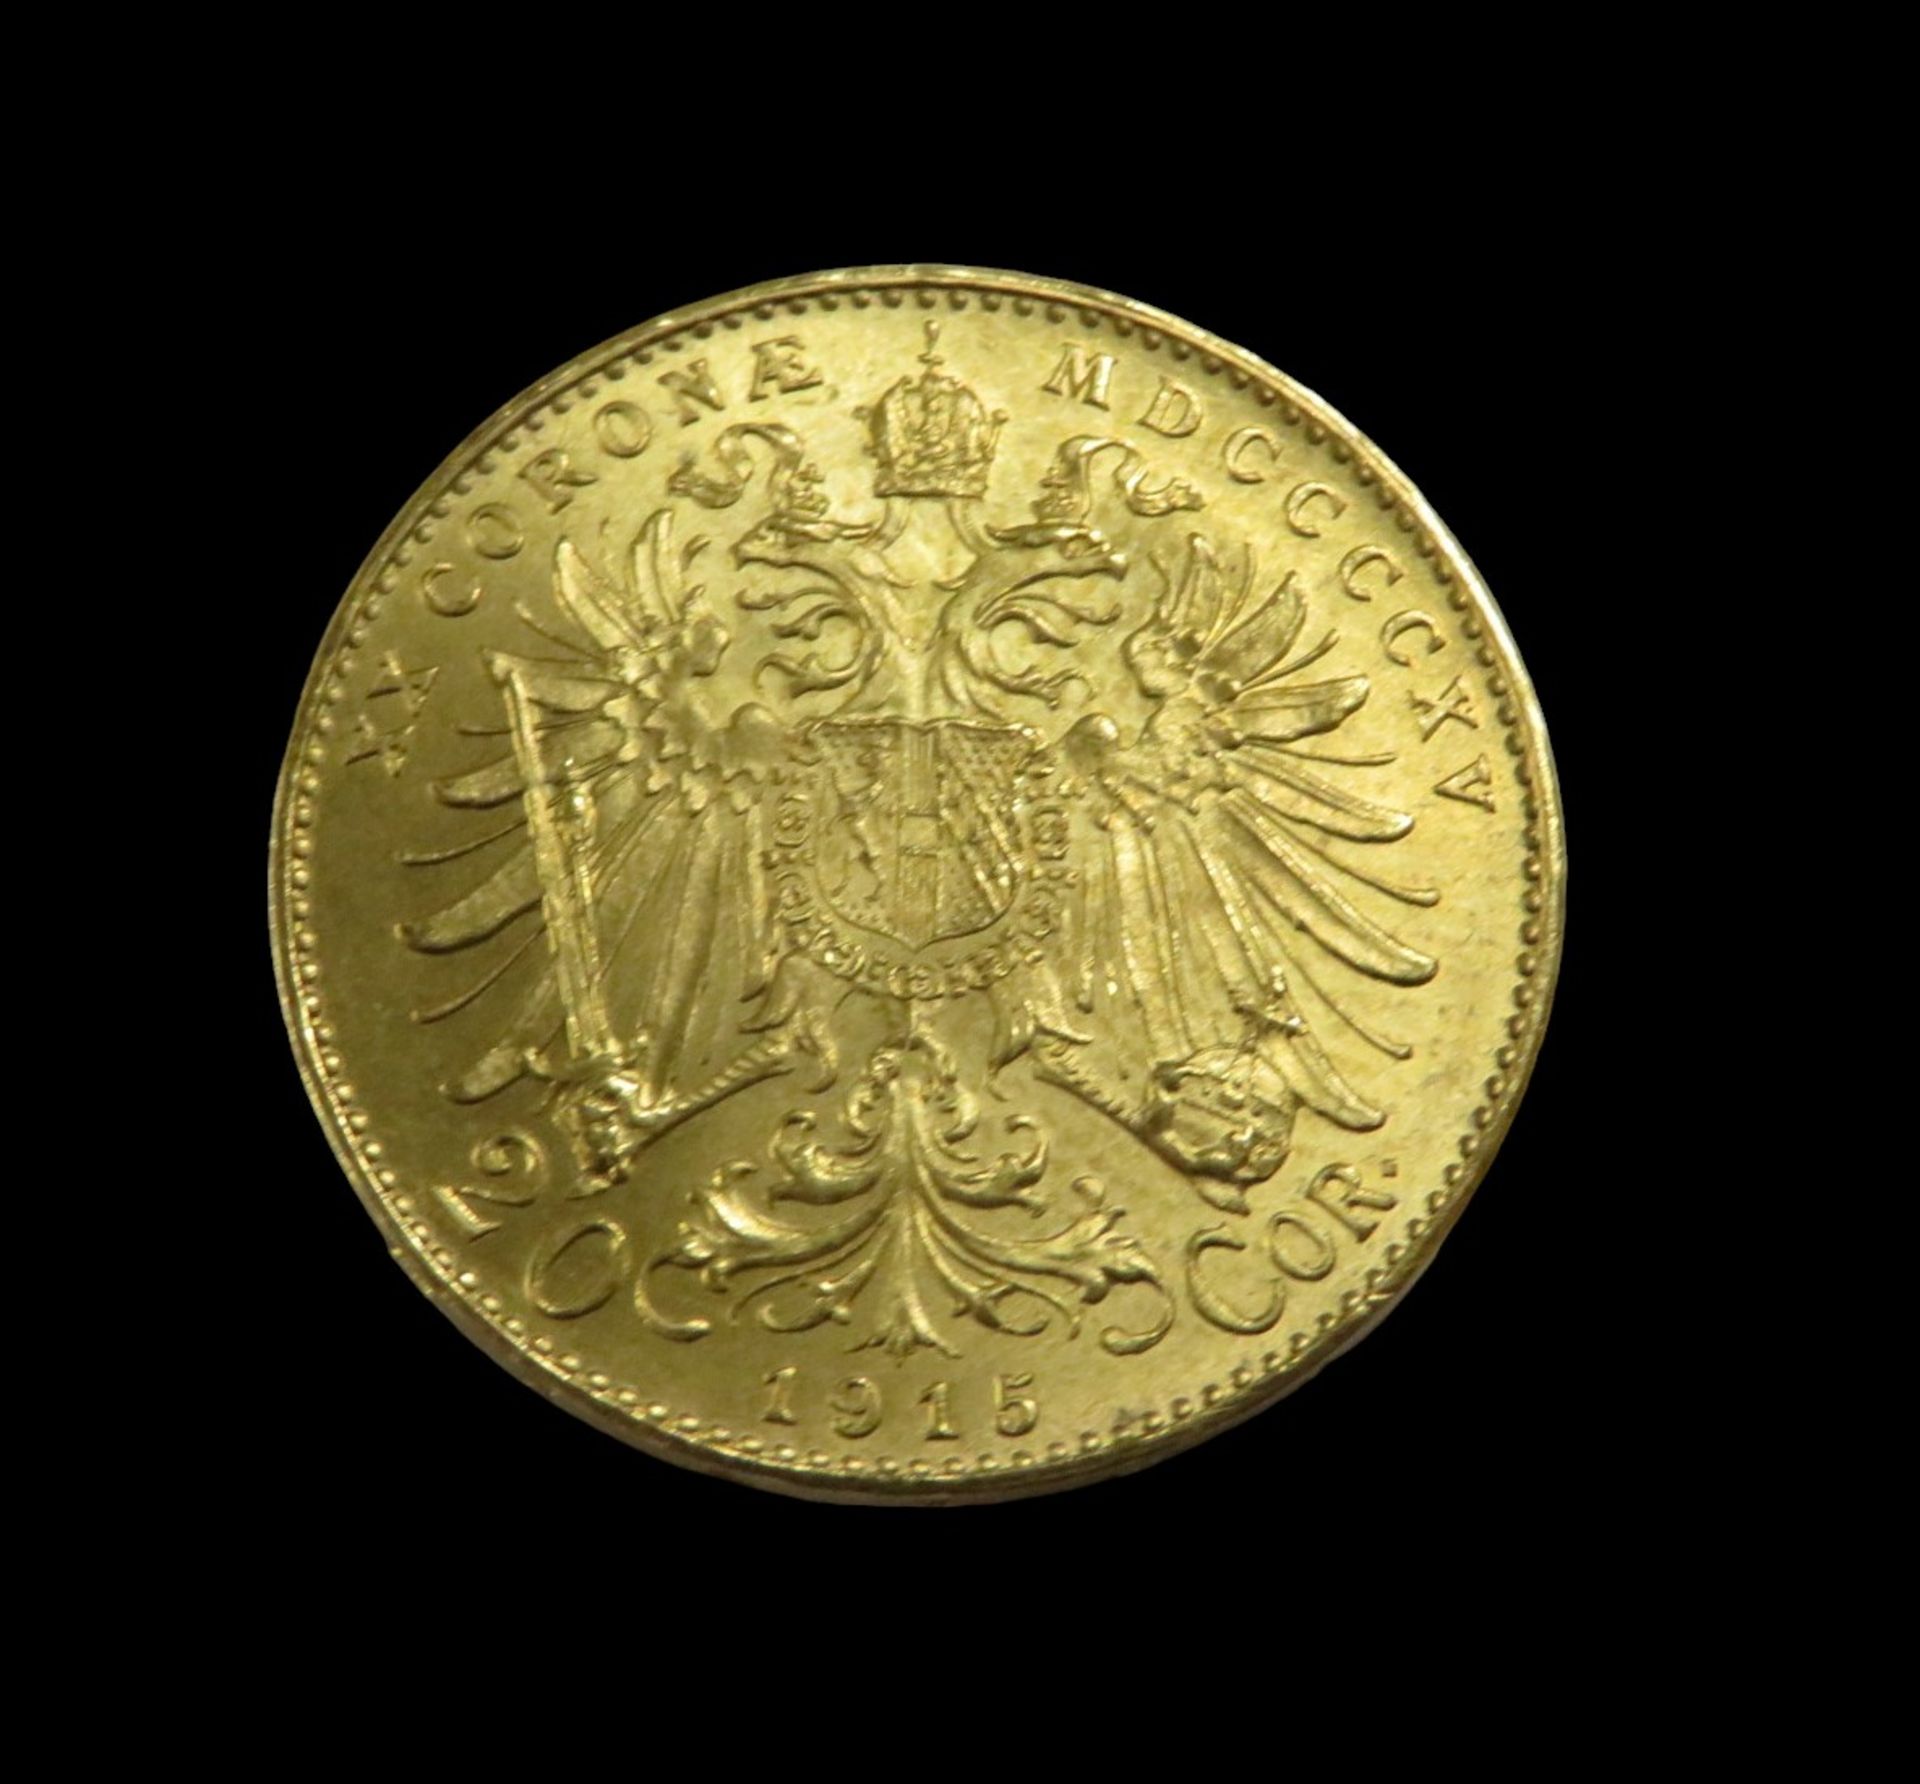 Goldmünze, Österreich, 20 Kronen, Franz Joseph I, 1915, Gold 900/000, 6,7 g, d 2,1 cm. - Bild 2 aus 2